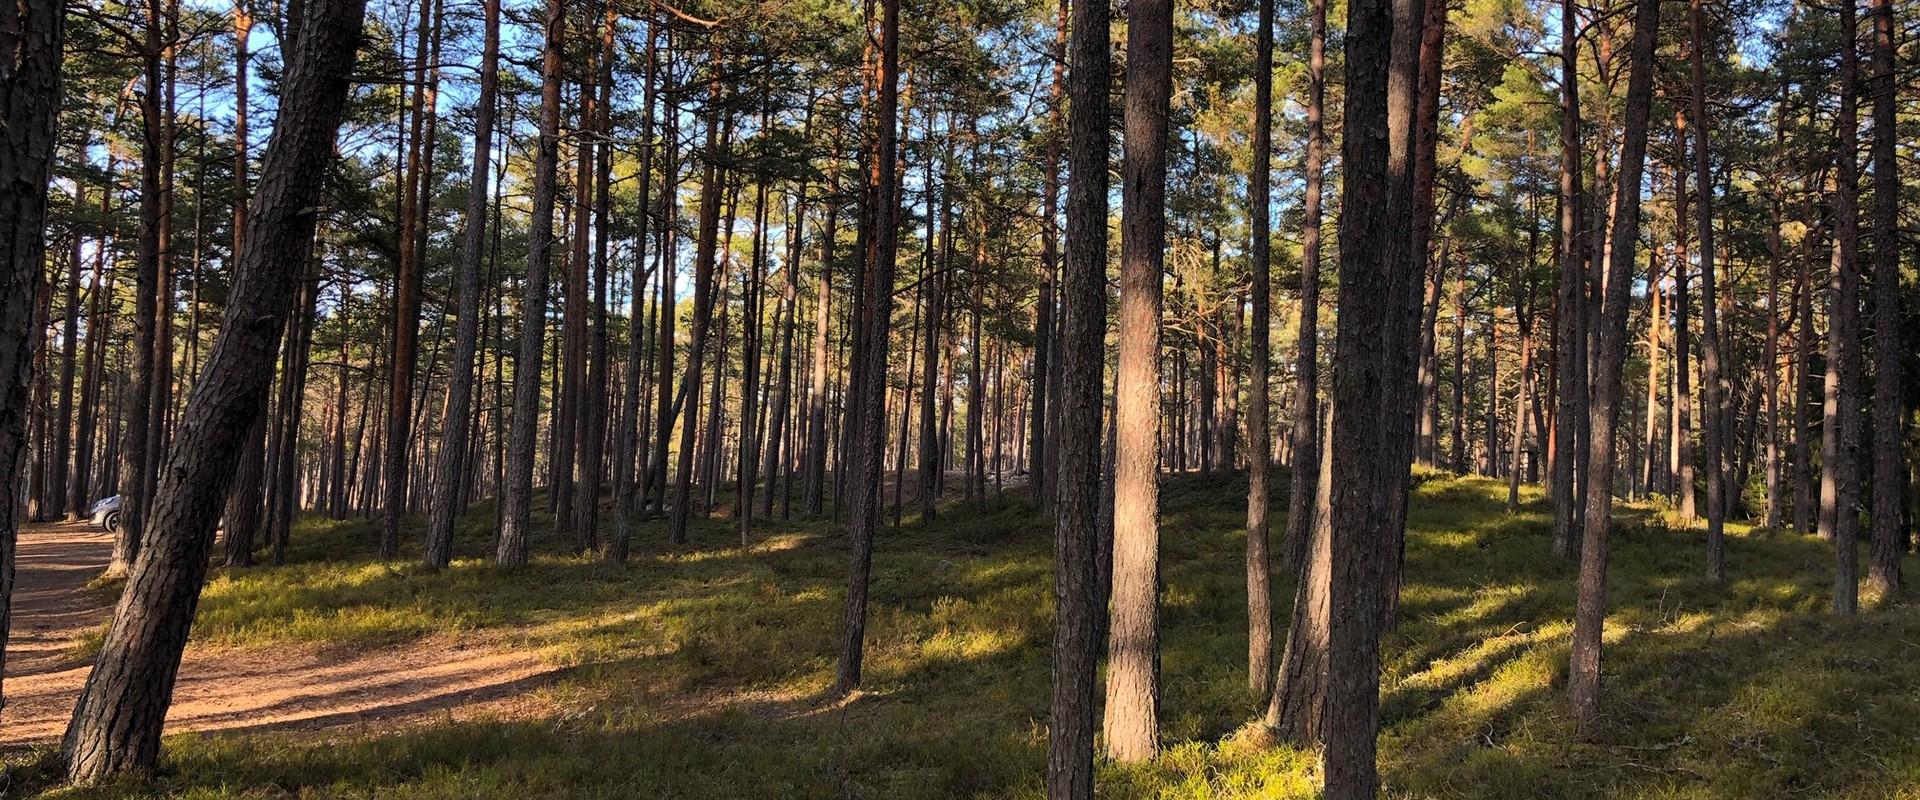 Naturschutzgebiet Nõva,  Erholungsbereich und Besuchszentrum der Staatlichen Forstverwaltung in Nõva